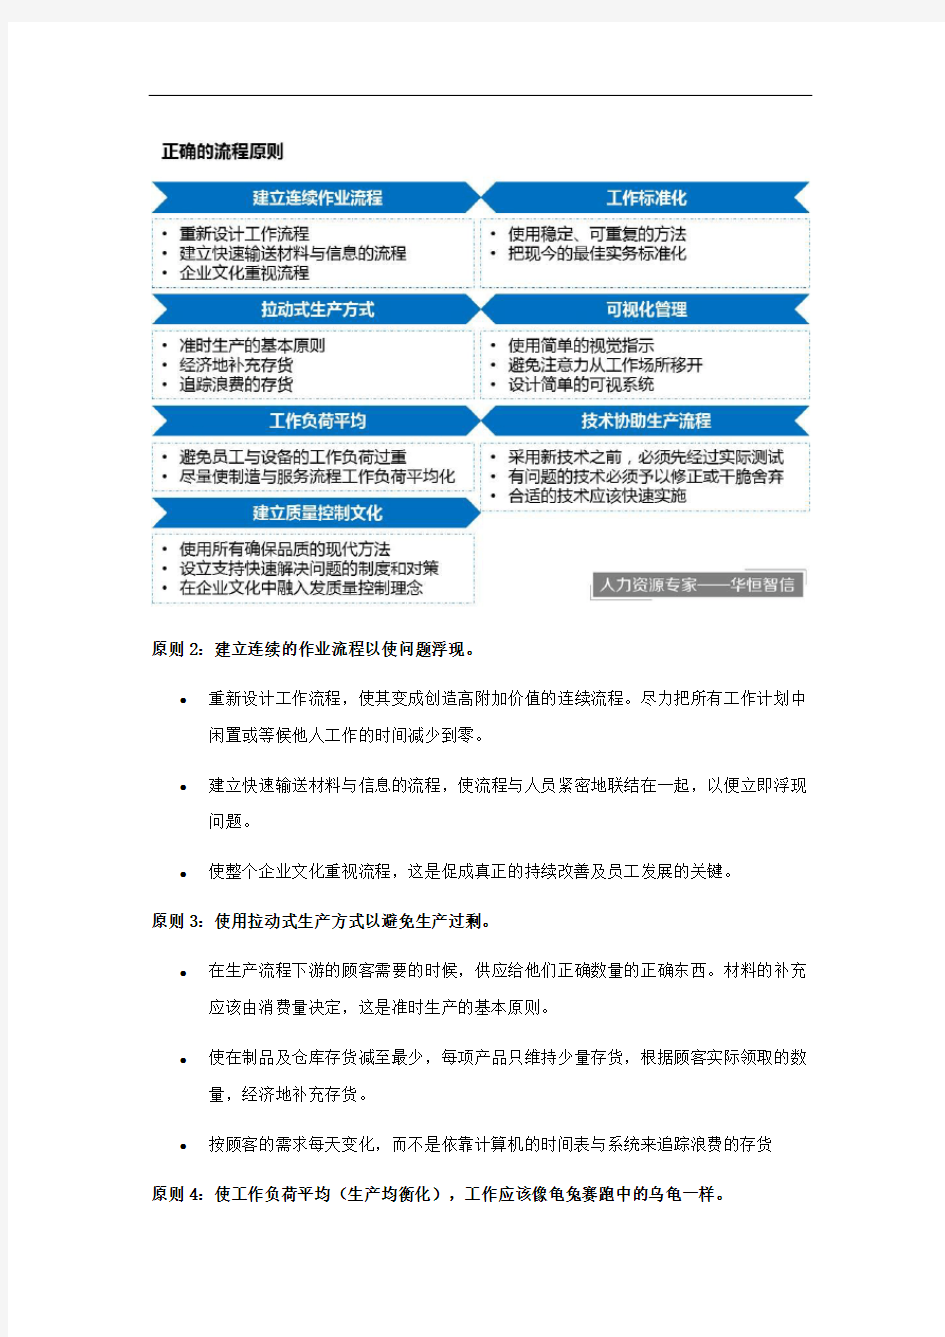 丰田模式：精益制造的14项管理原则